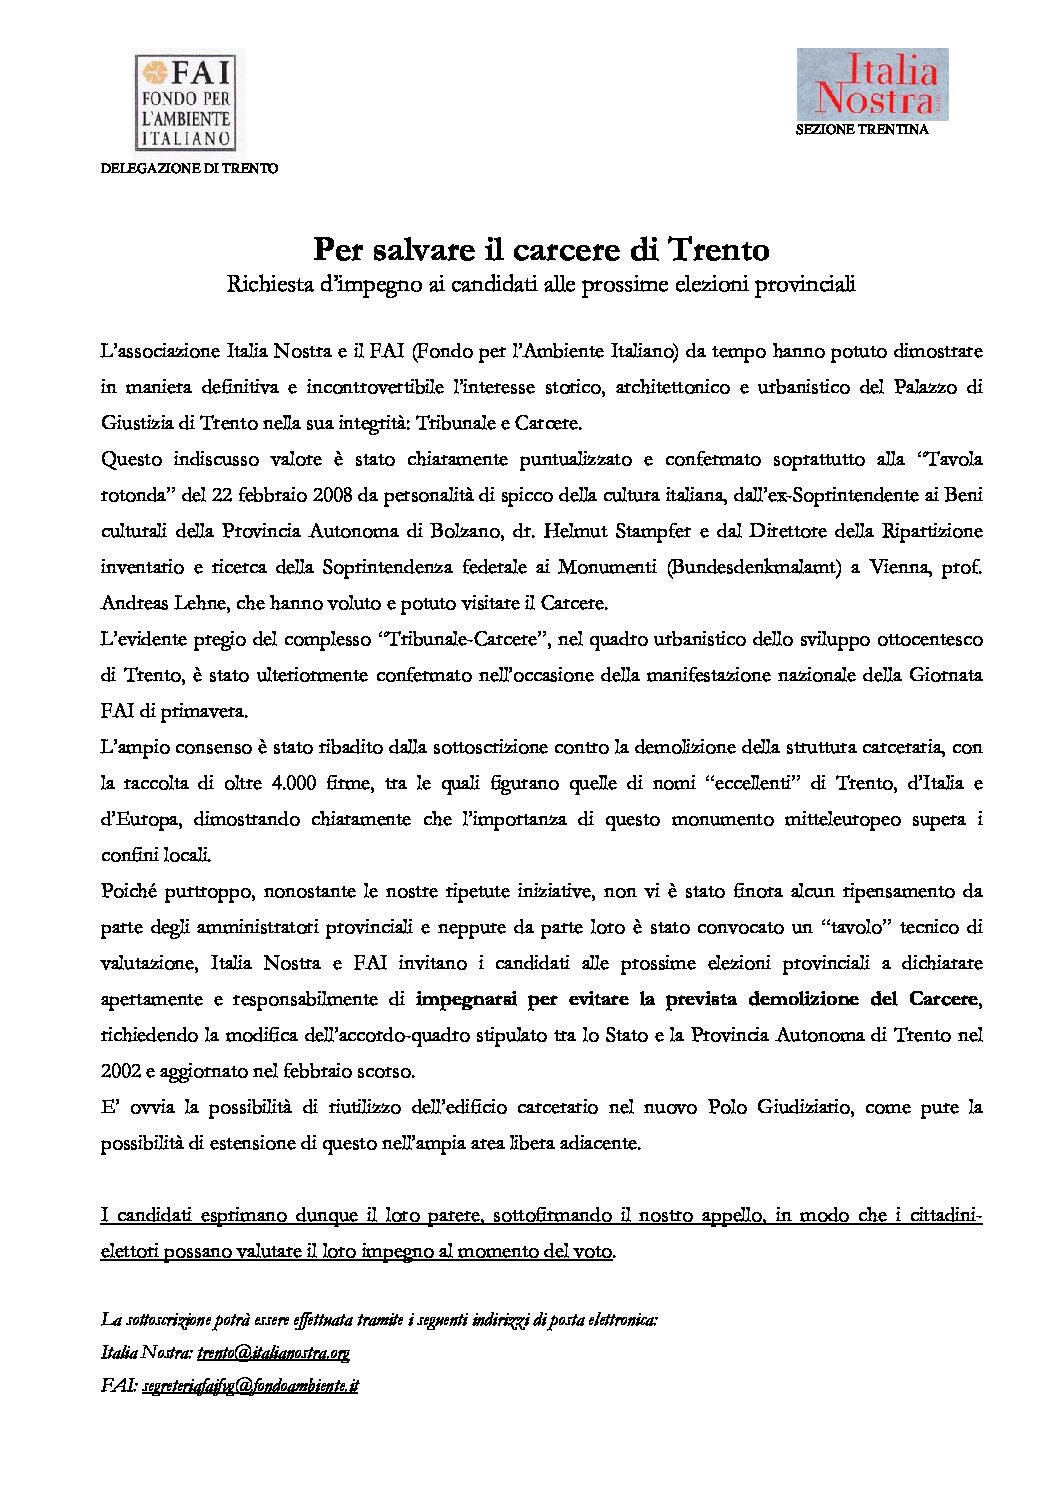 Per salvare il carcere di Trento – Richiesta impegno ai candidati.